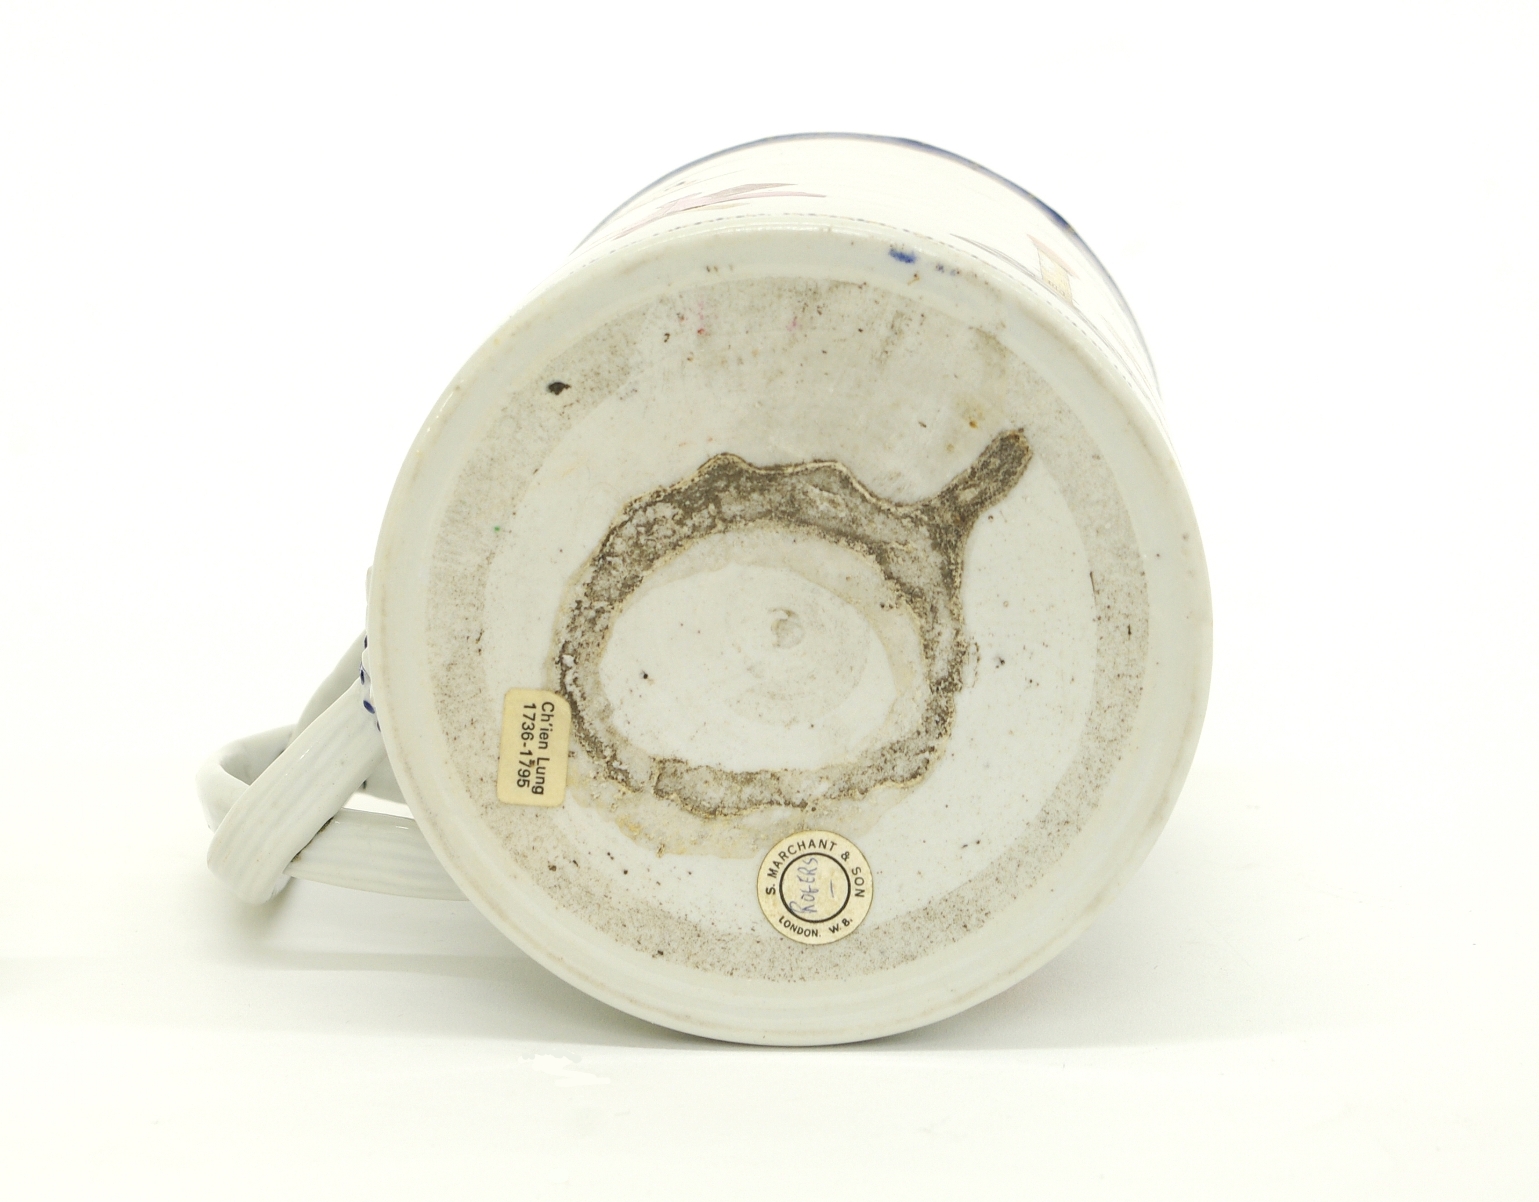 Chinese Export Porcelain Masonic Mug, c. 1795